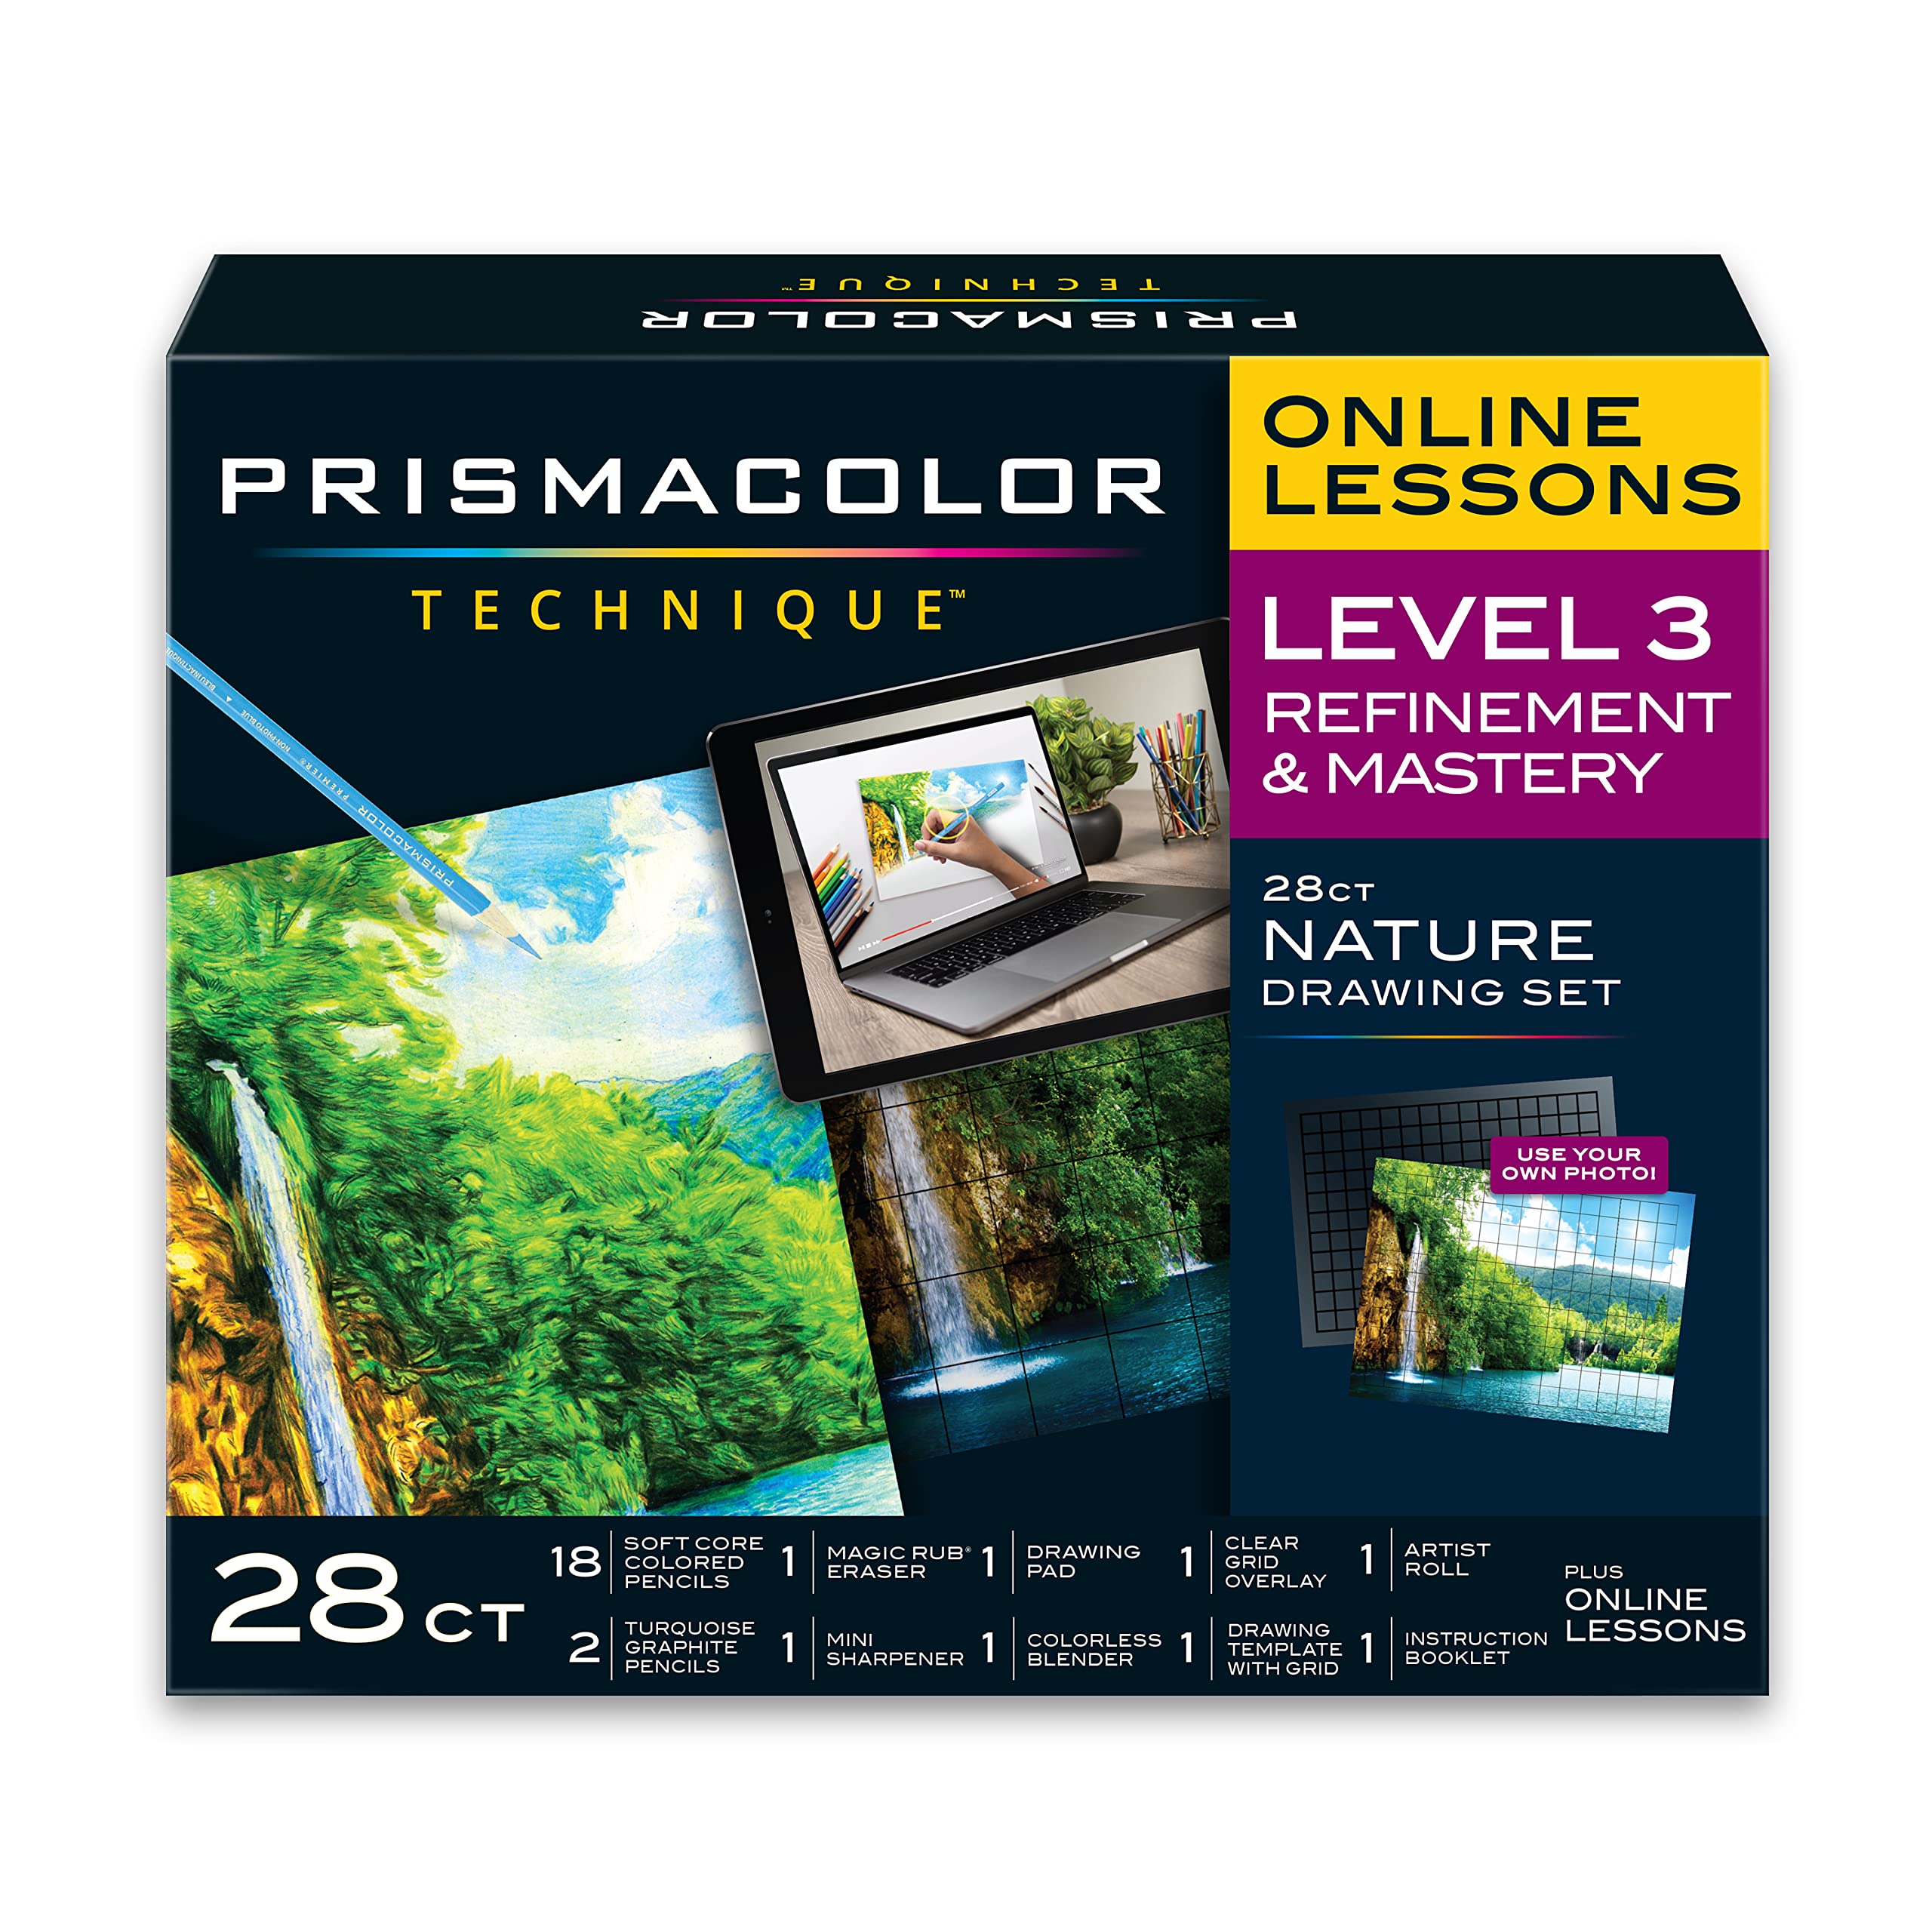  Prismacolor Technique, Art Supplies with Digital